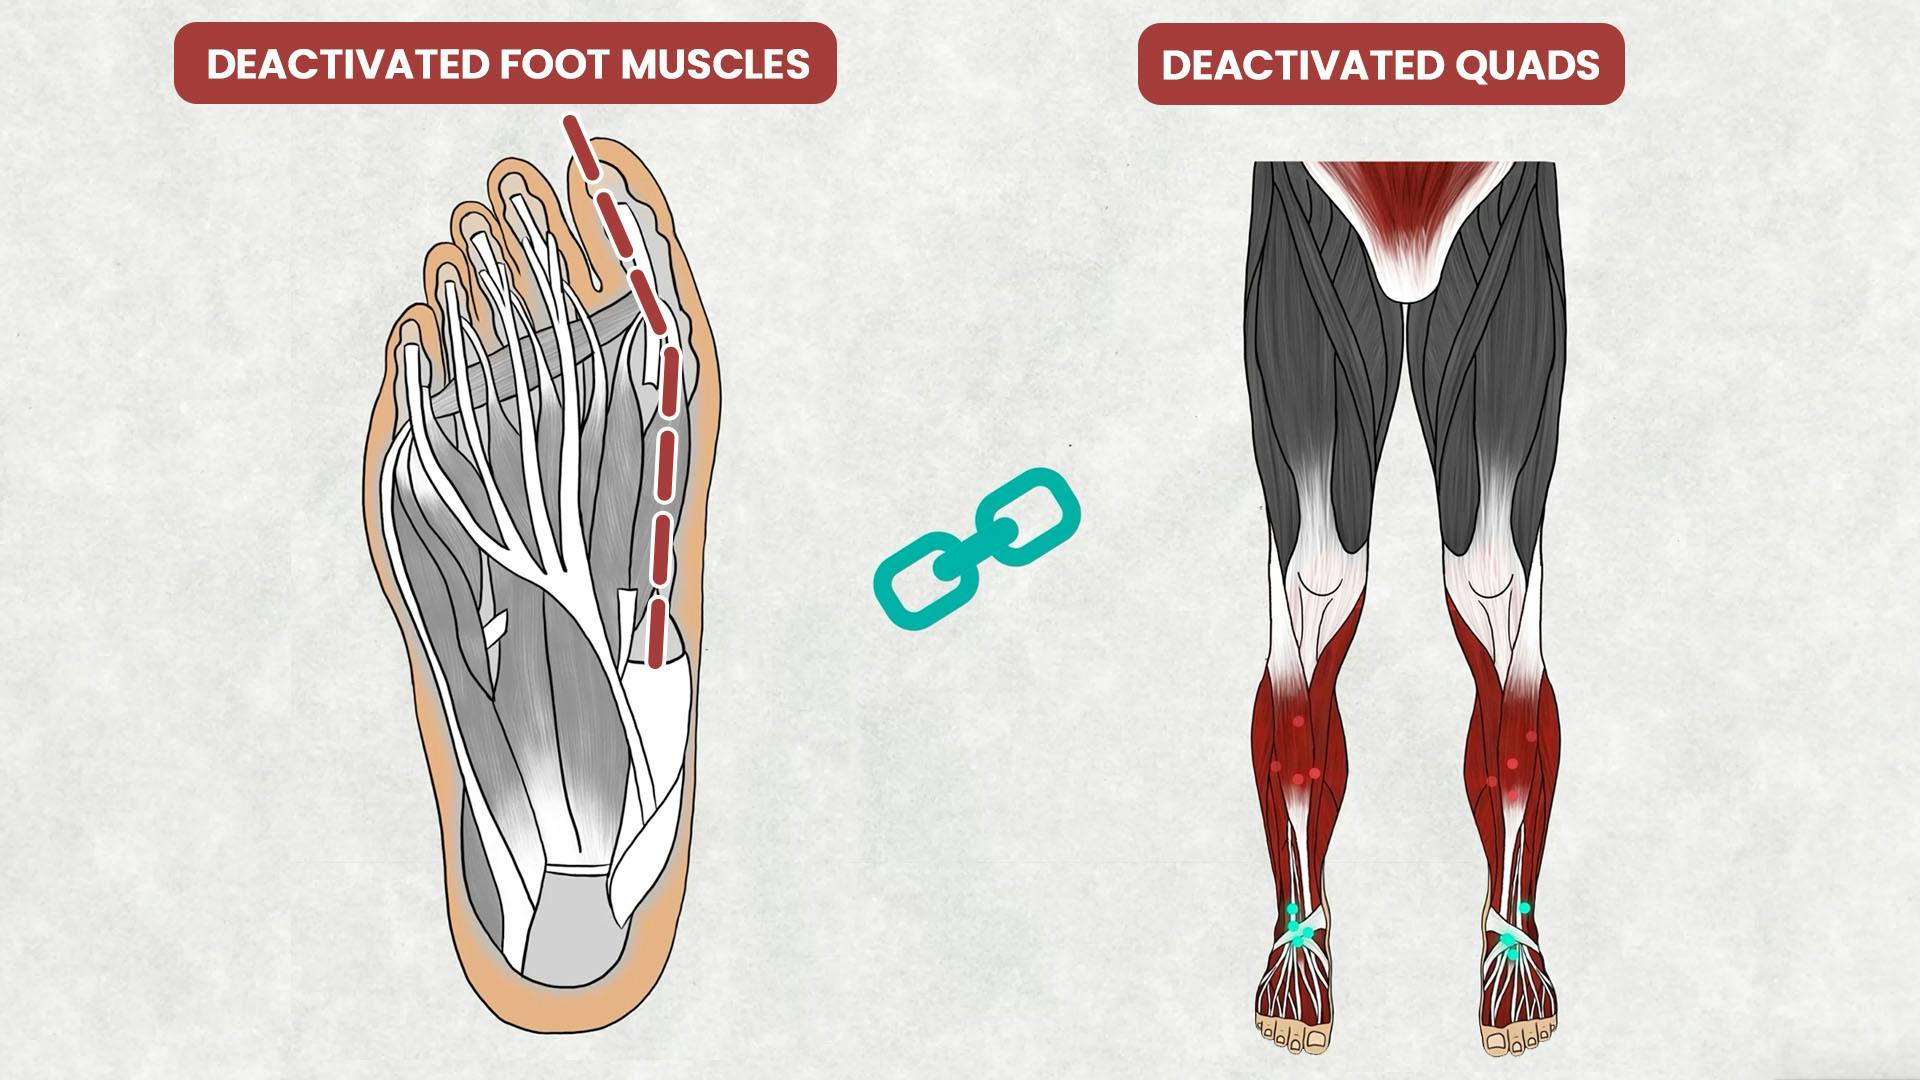 Deactivated Foot Muscles Causes Quad Deactivation